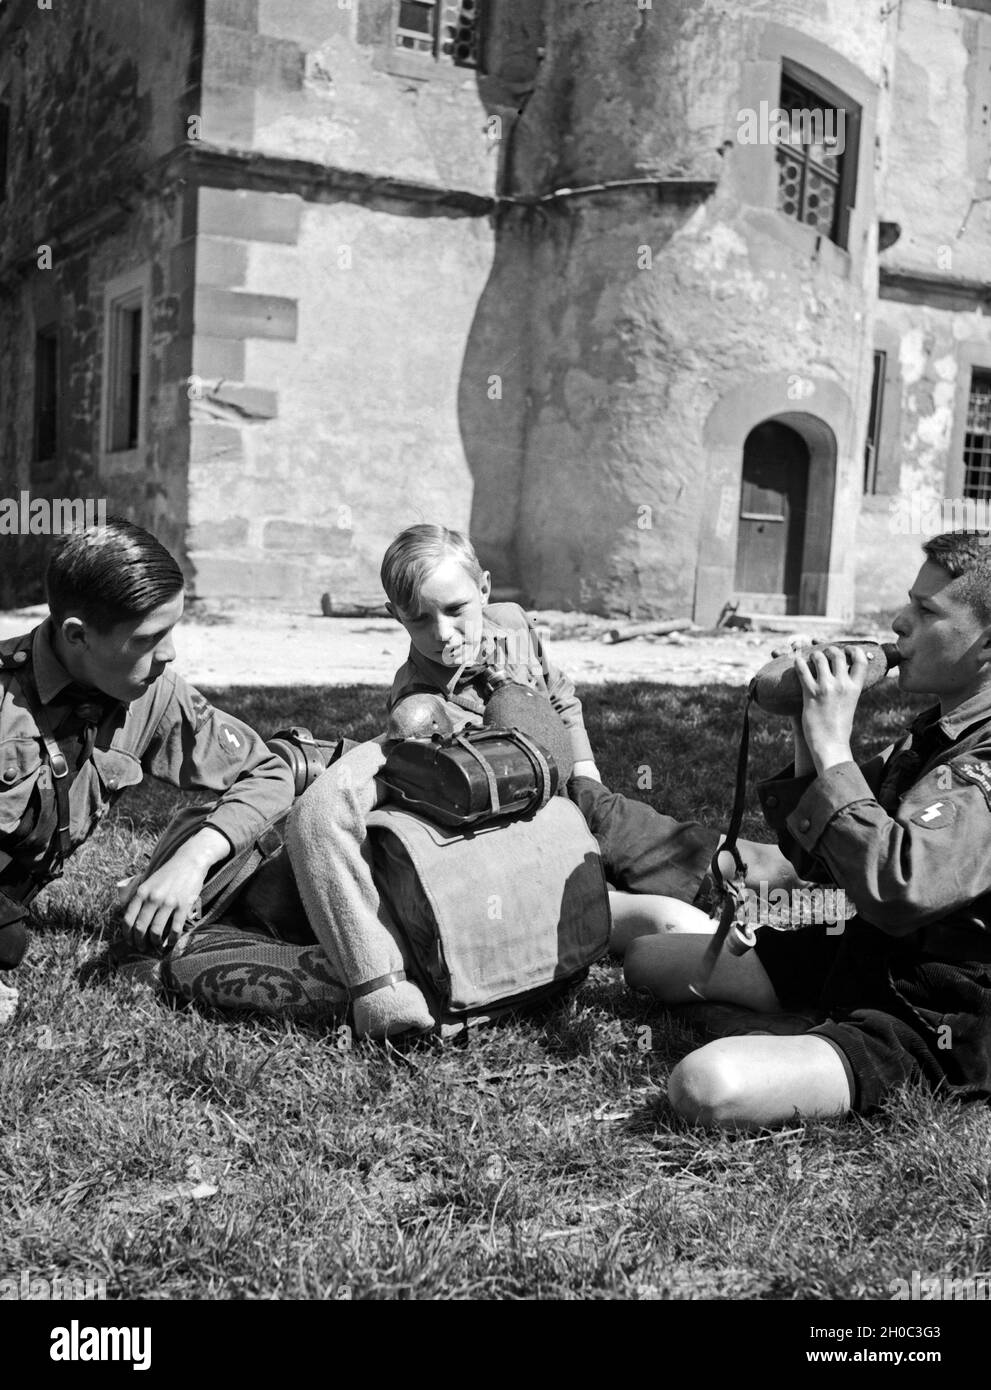 Drei Hitlerjungen rasten auf einer Wandertour in Rothenburg ob der Tauber, 1930er Jahre. Three Hitler youths resting at Rothenburg ob der Tauber, 1930s. Stock Photo